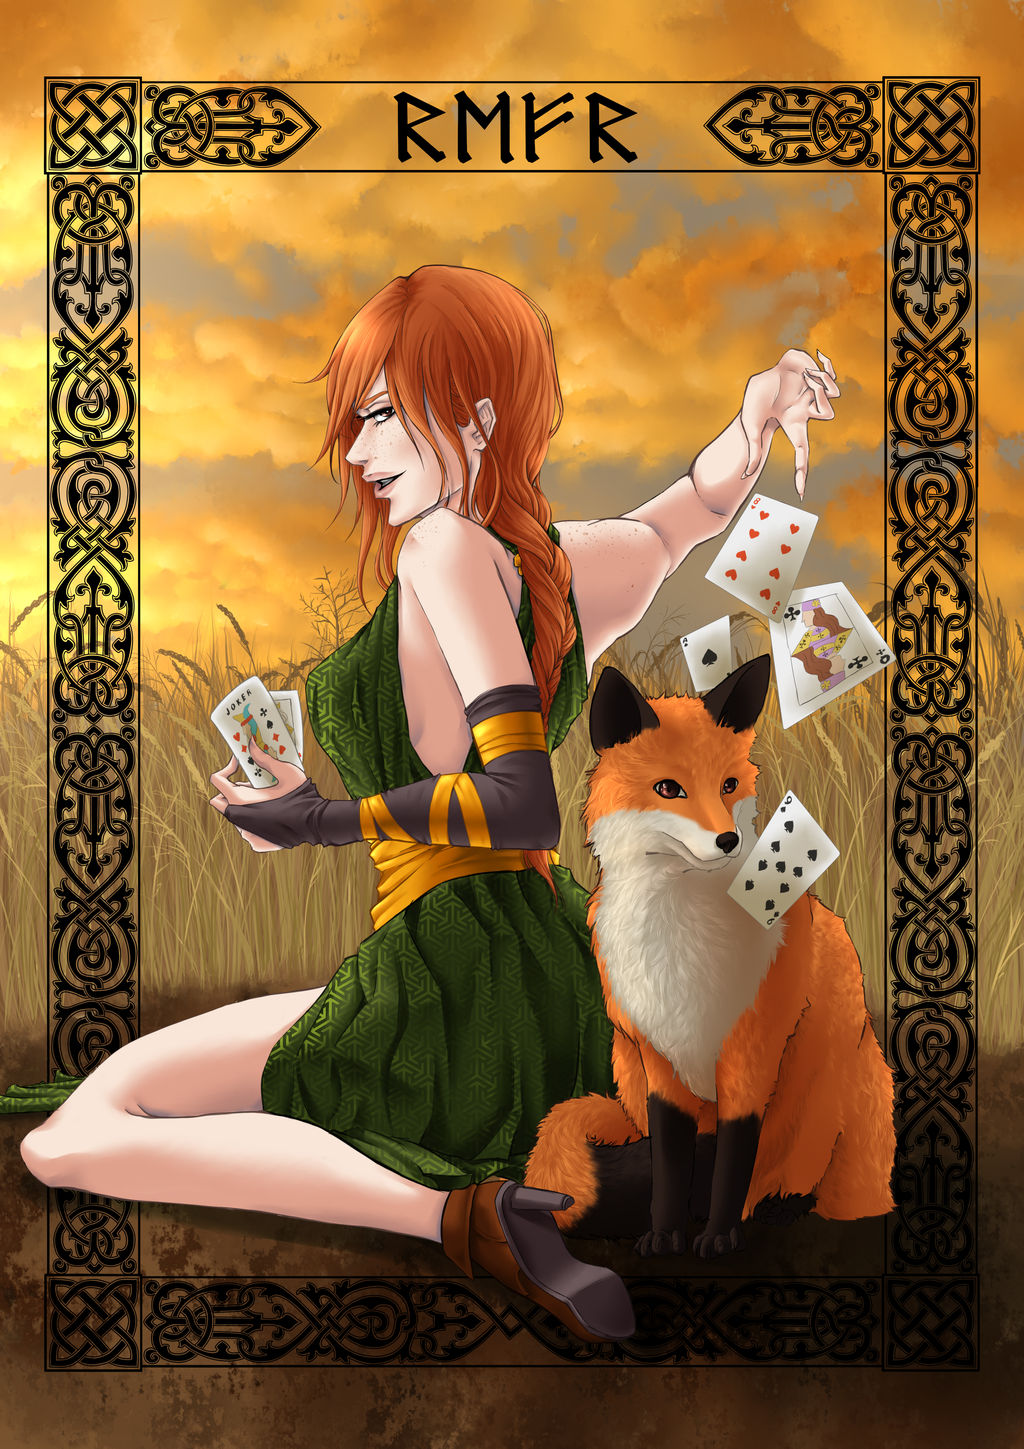 Eve the Fox